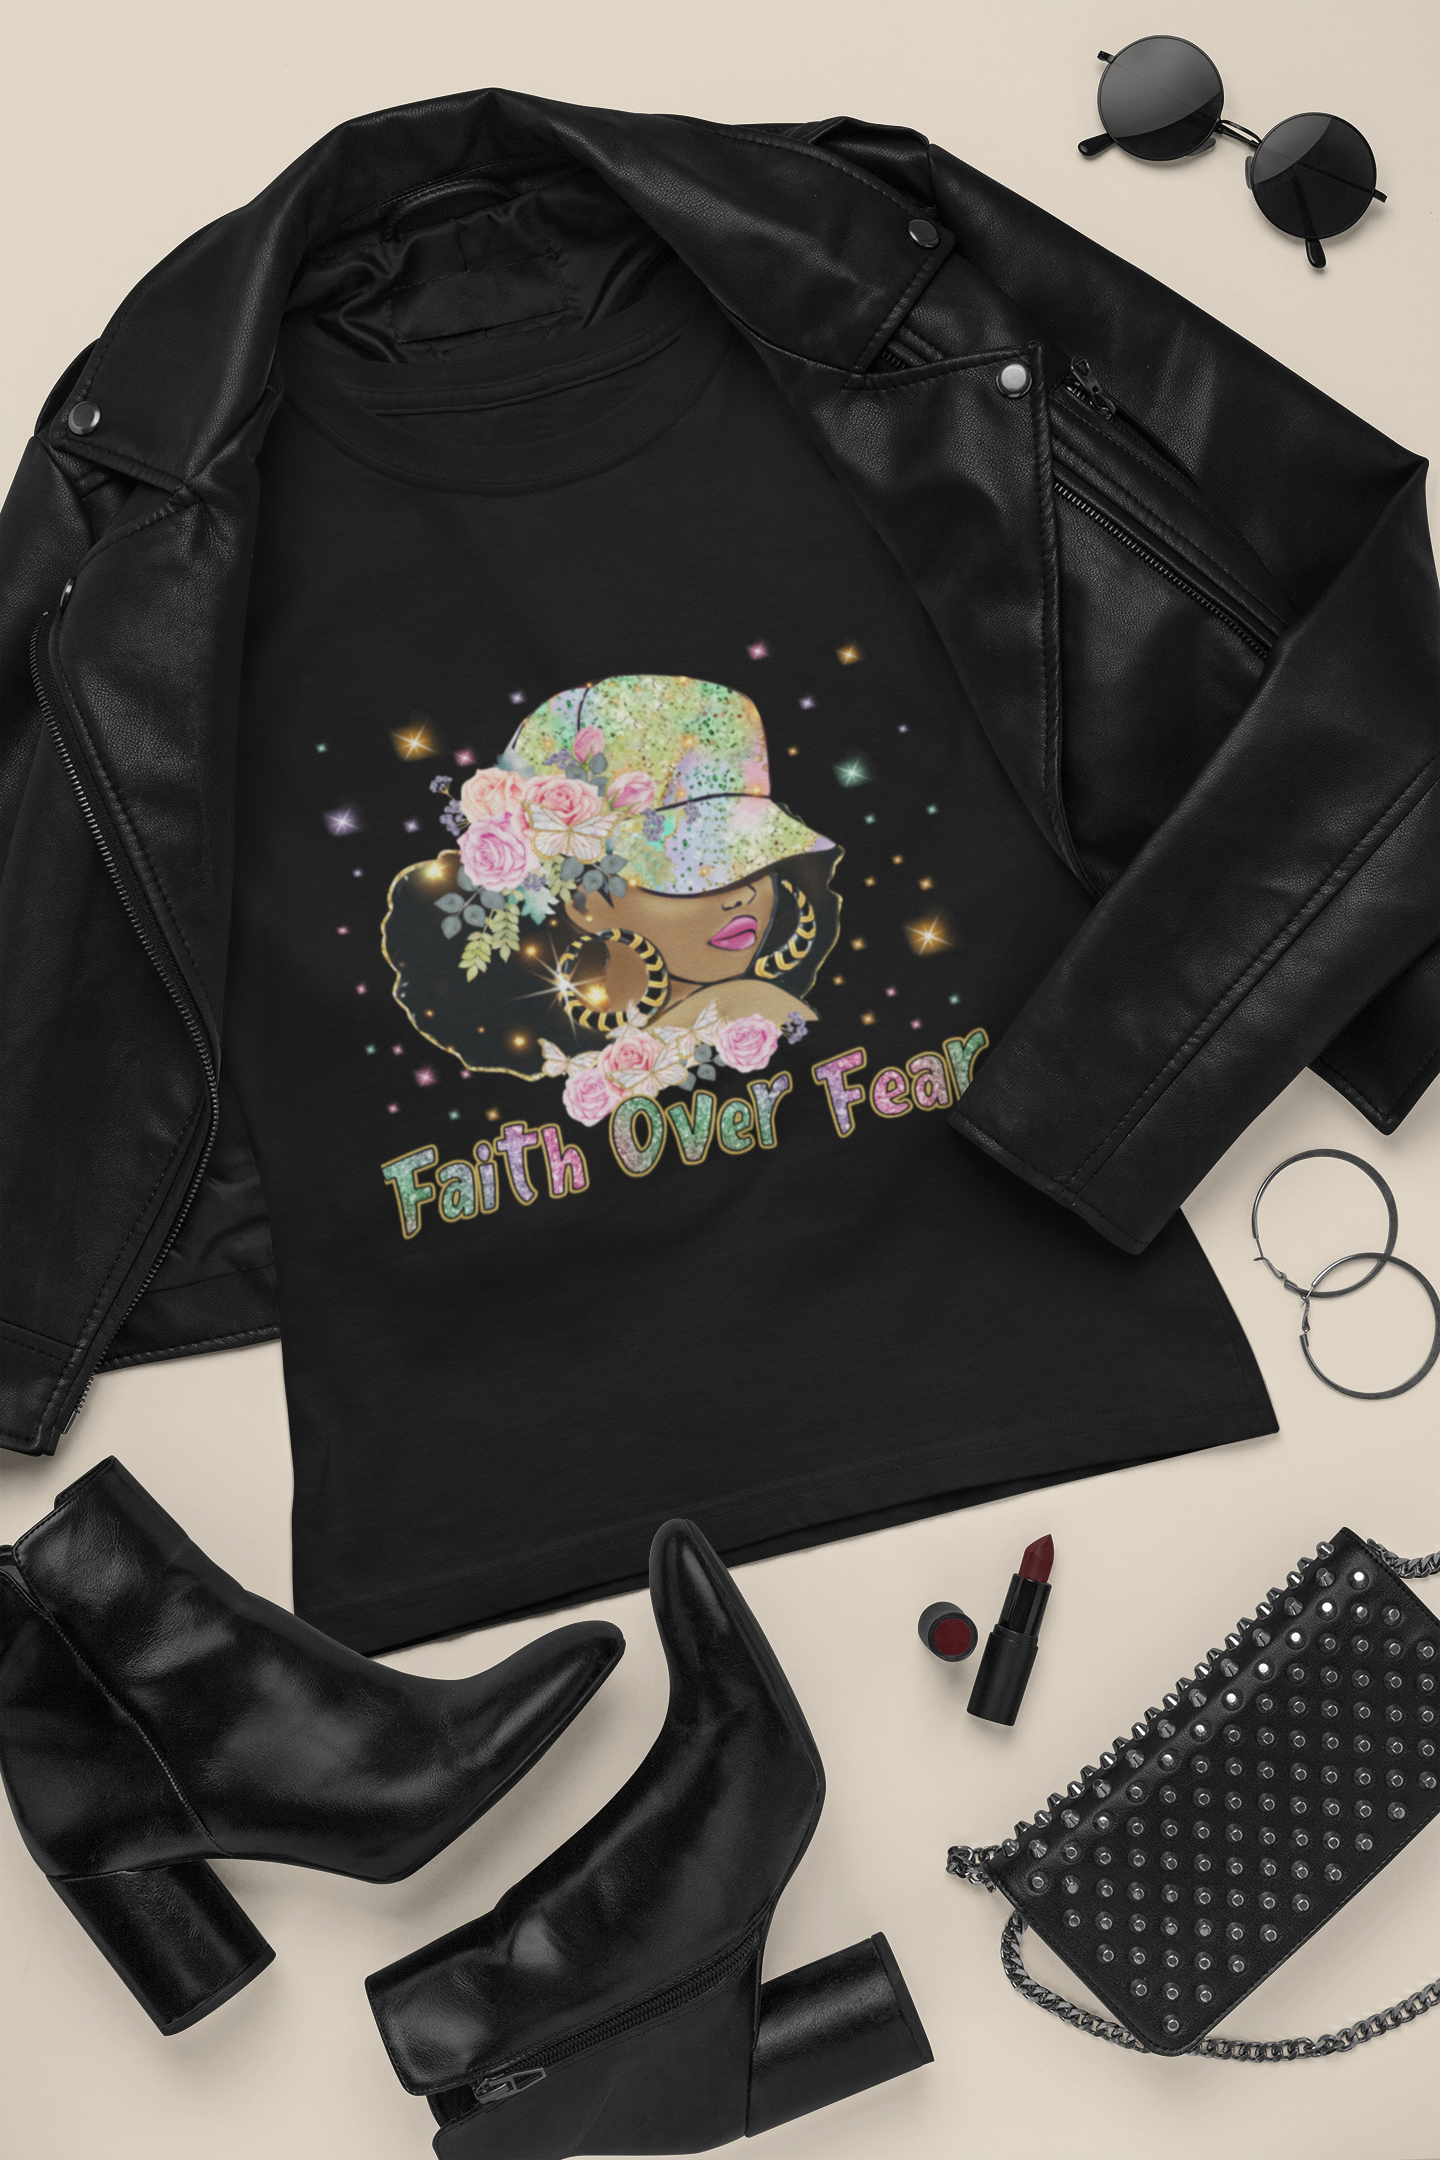 Faith Over Fear T Shirts